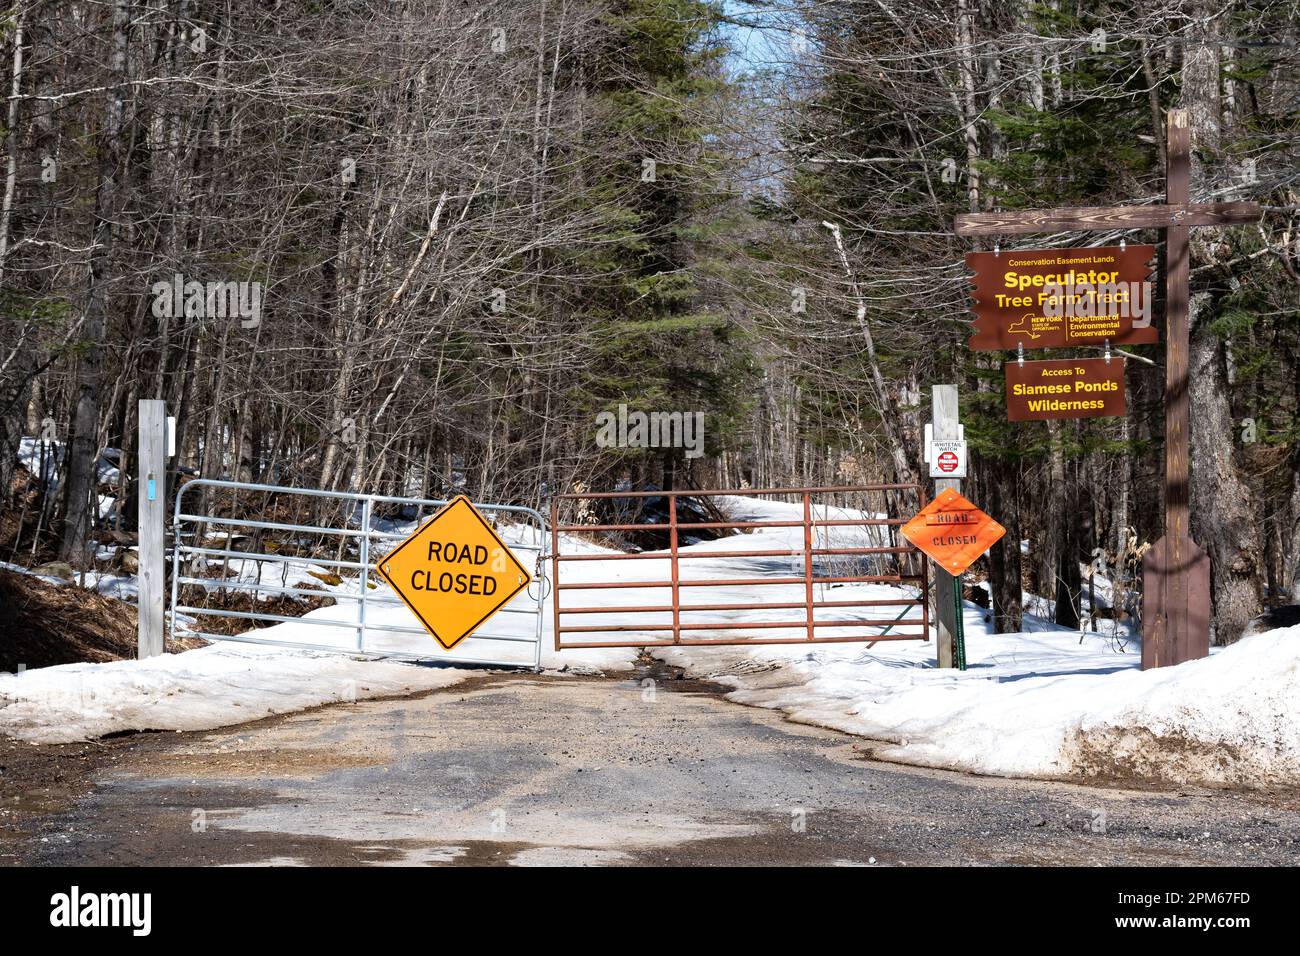 Ein geschlossenes Tor und Schilder weisen darauf hin, dass die Straße im Spätwinter in den Adirondack Mountains, NY, USA wegen Schneefällen gesperrt ist Stockfoto